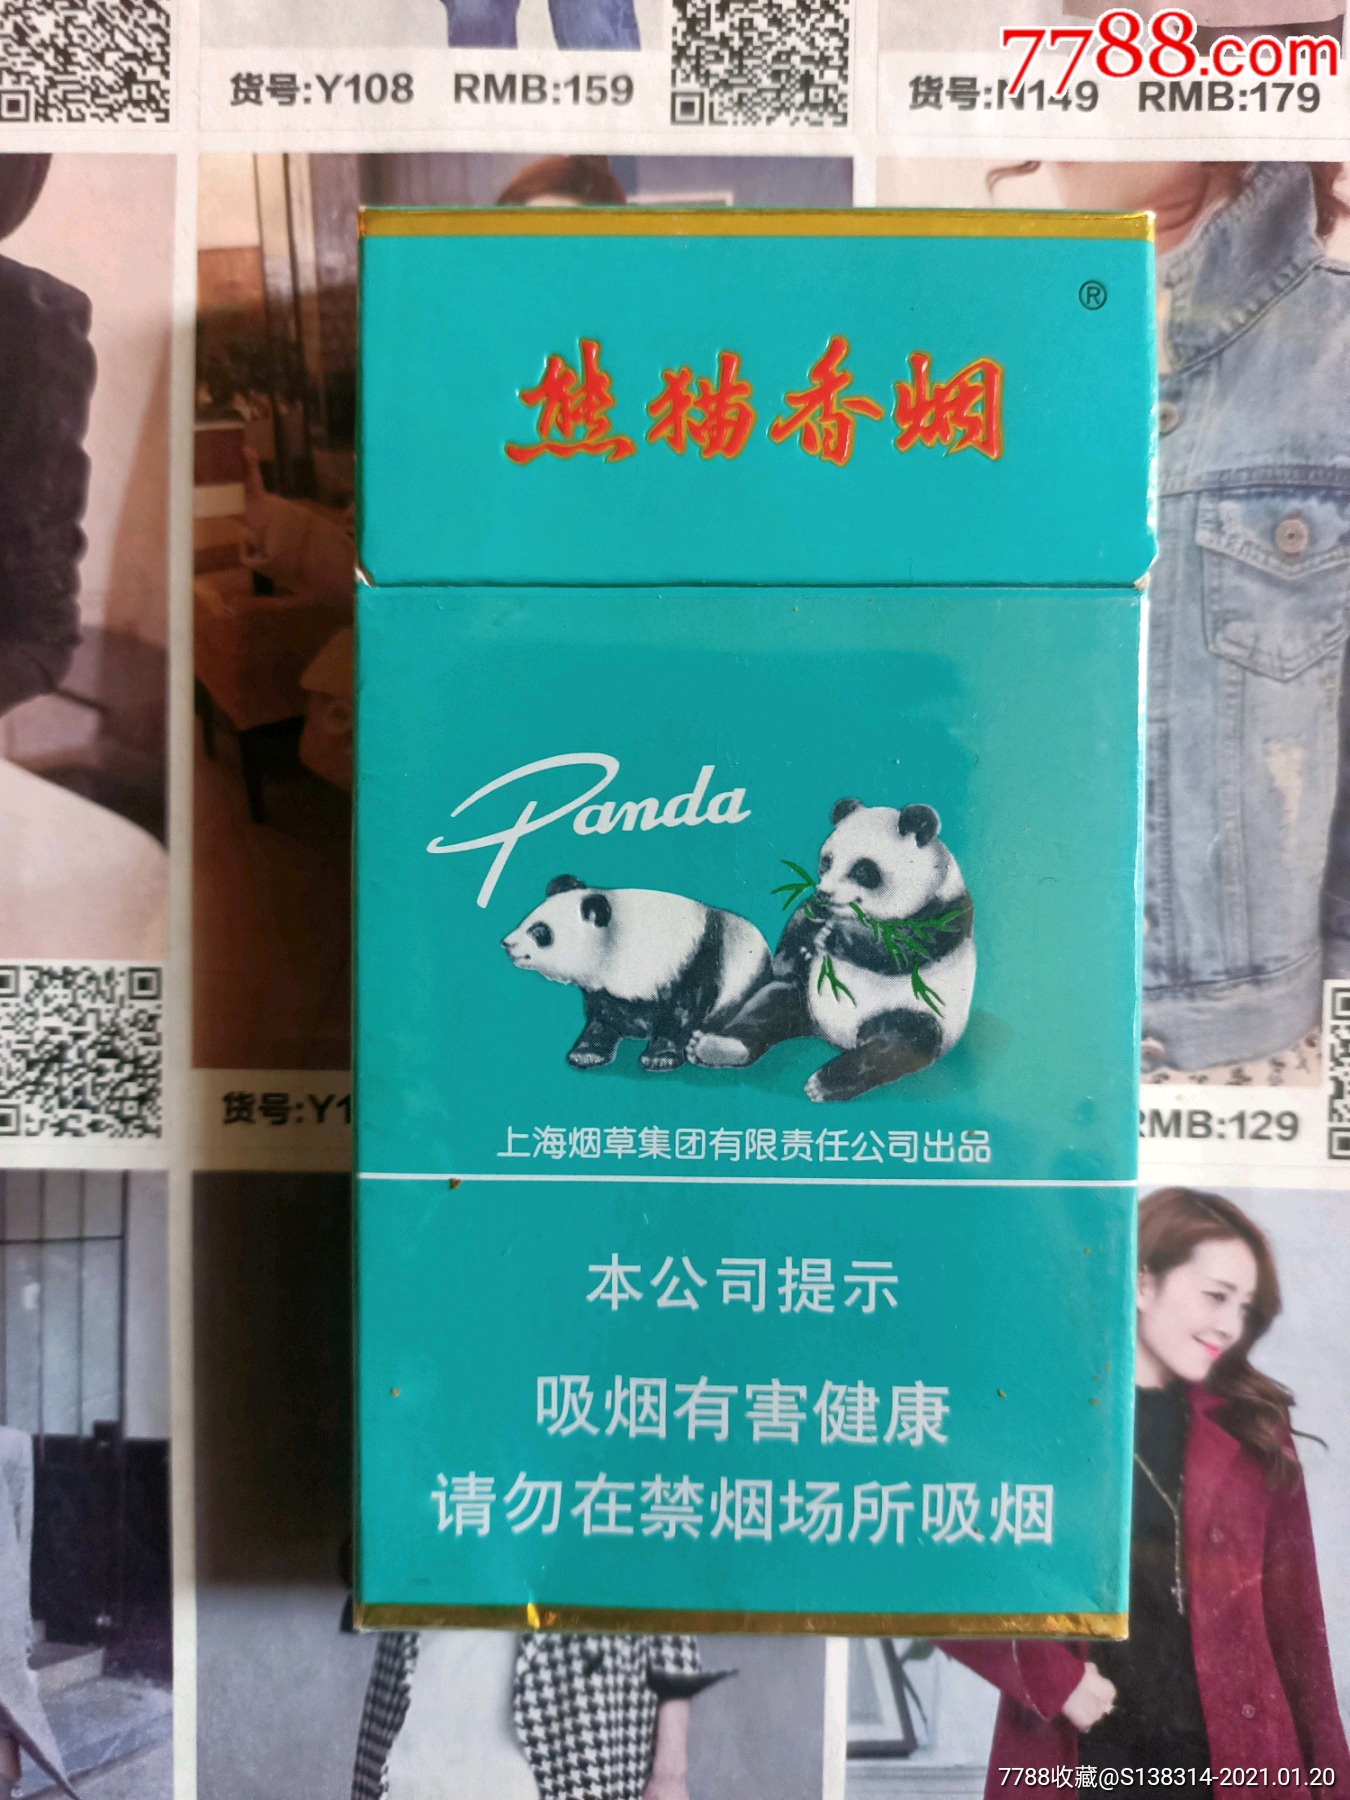 熊猫香烟价格表图,内供香烟烟中之王